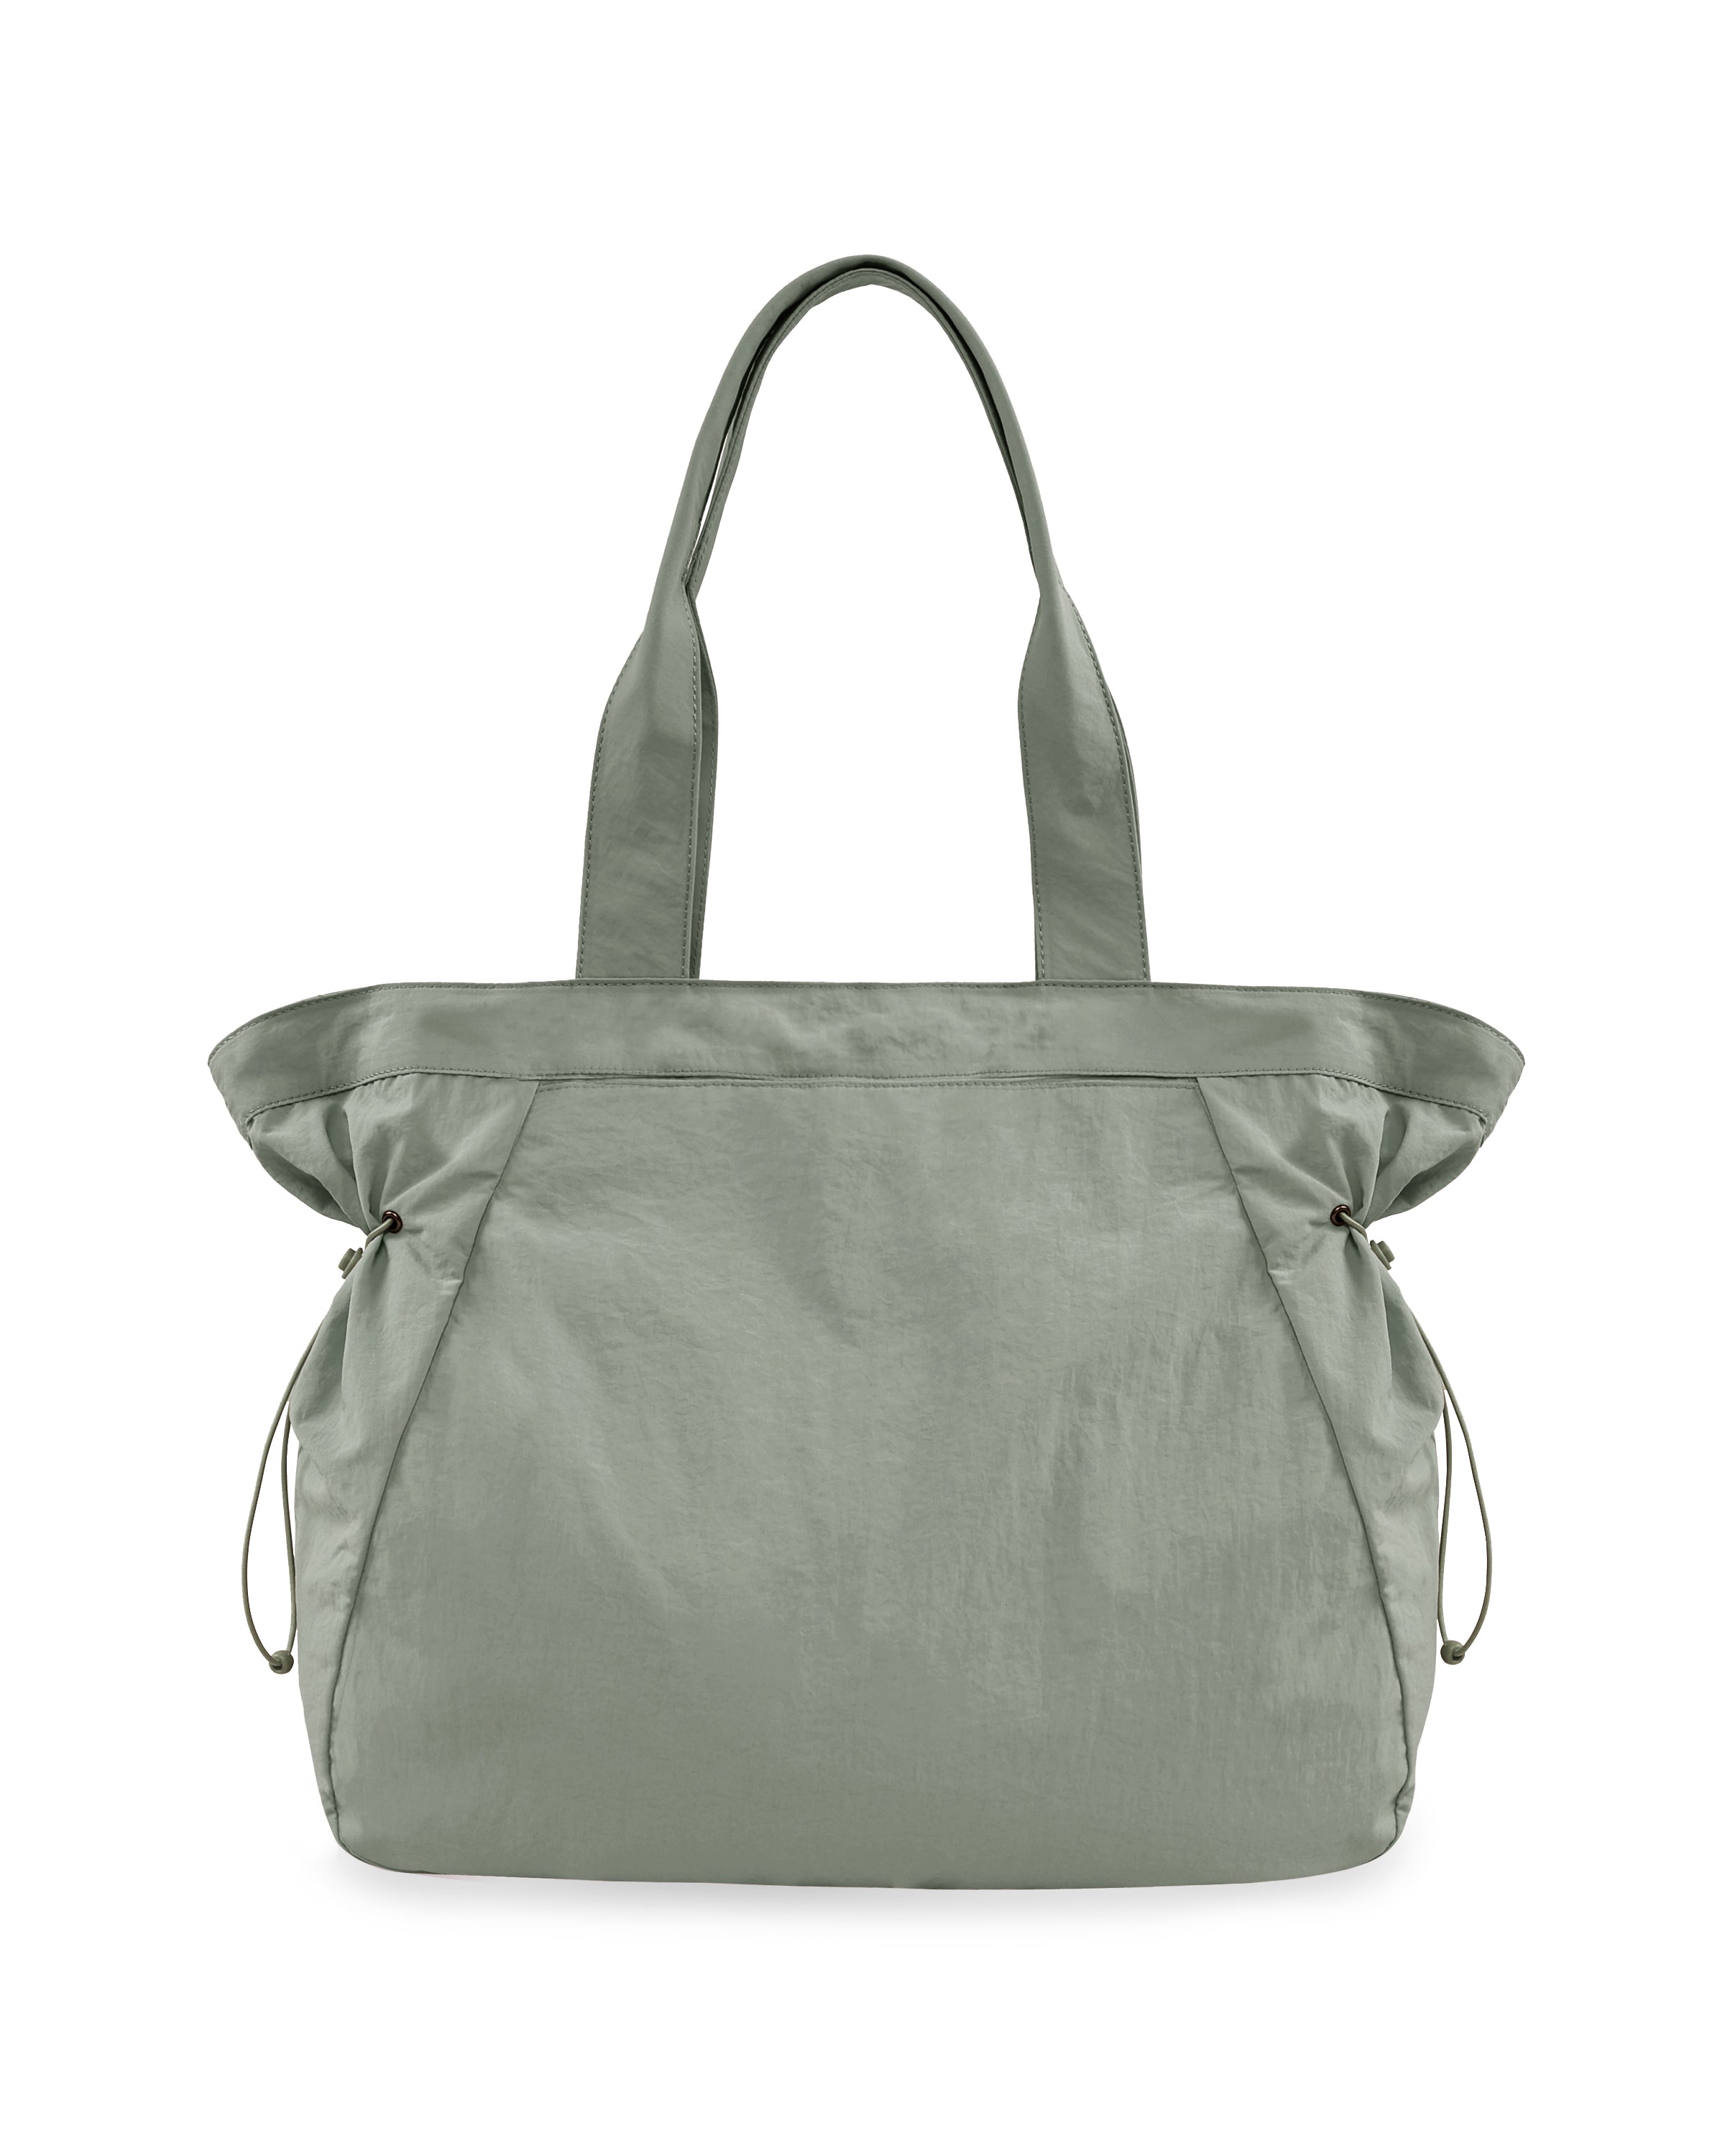 18L Side-Cinch Shopper Tote Bags Grey 14" x 16" x 4.5" - ododos